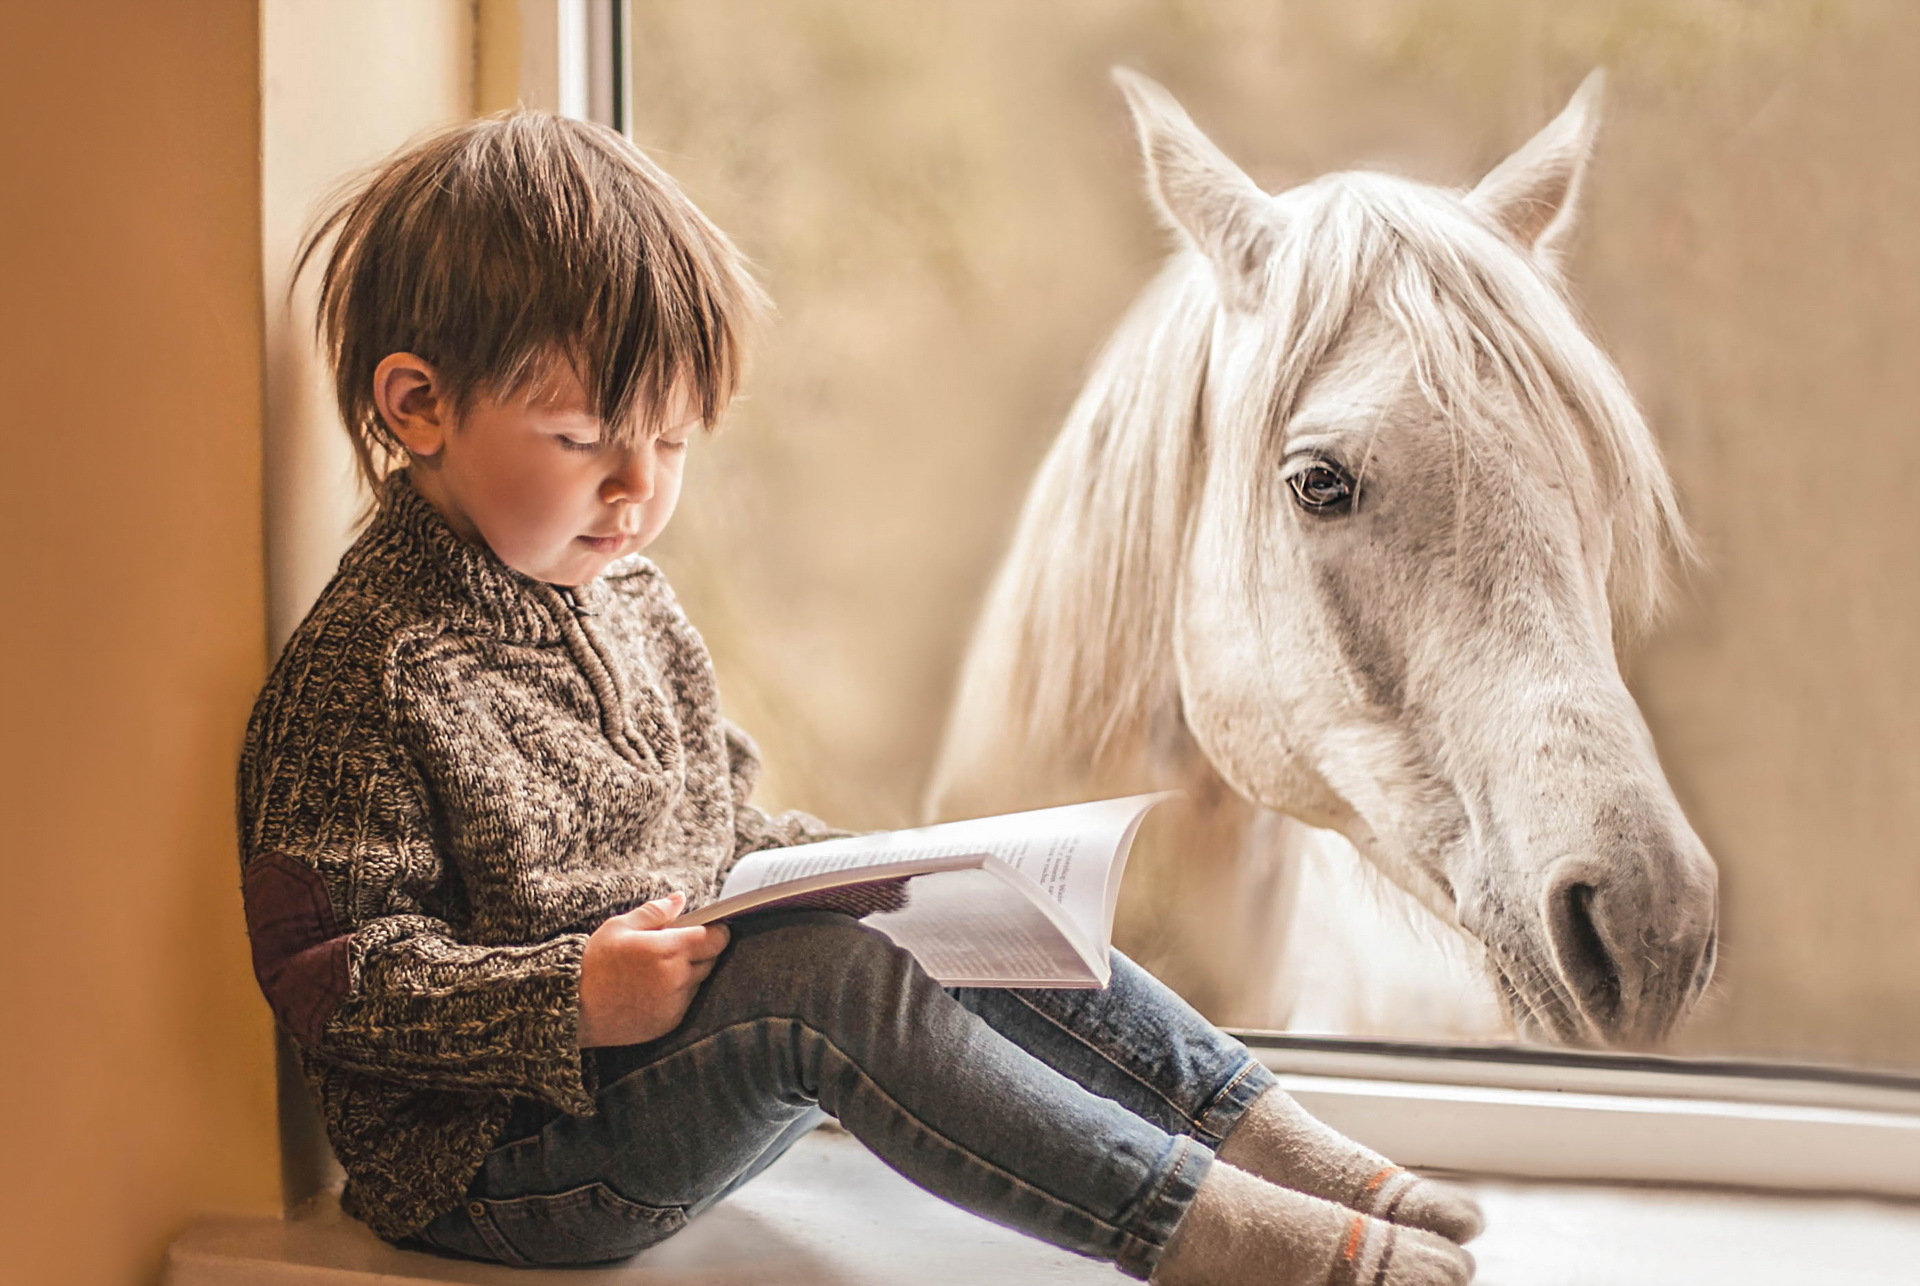 Читать про лошадей. Мальчик на лошади. Мальчик на лошадке. Мальчик и конь. Лошадь для детей.